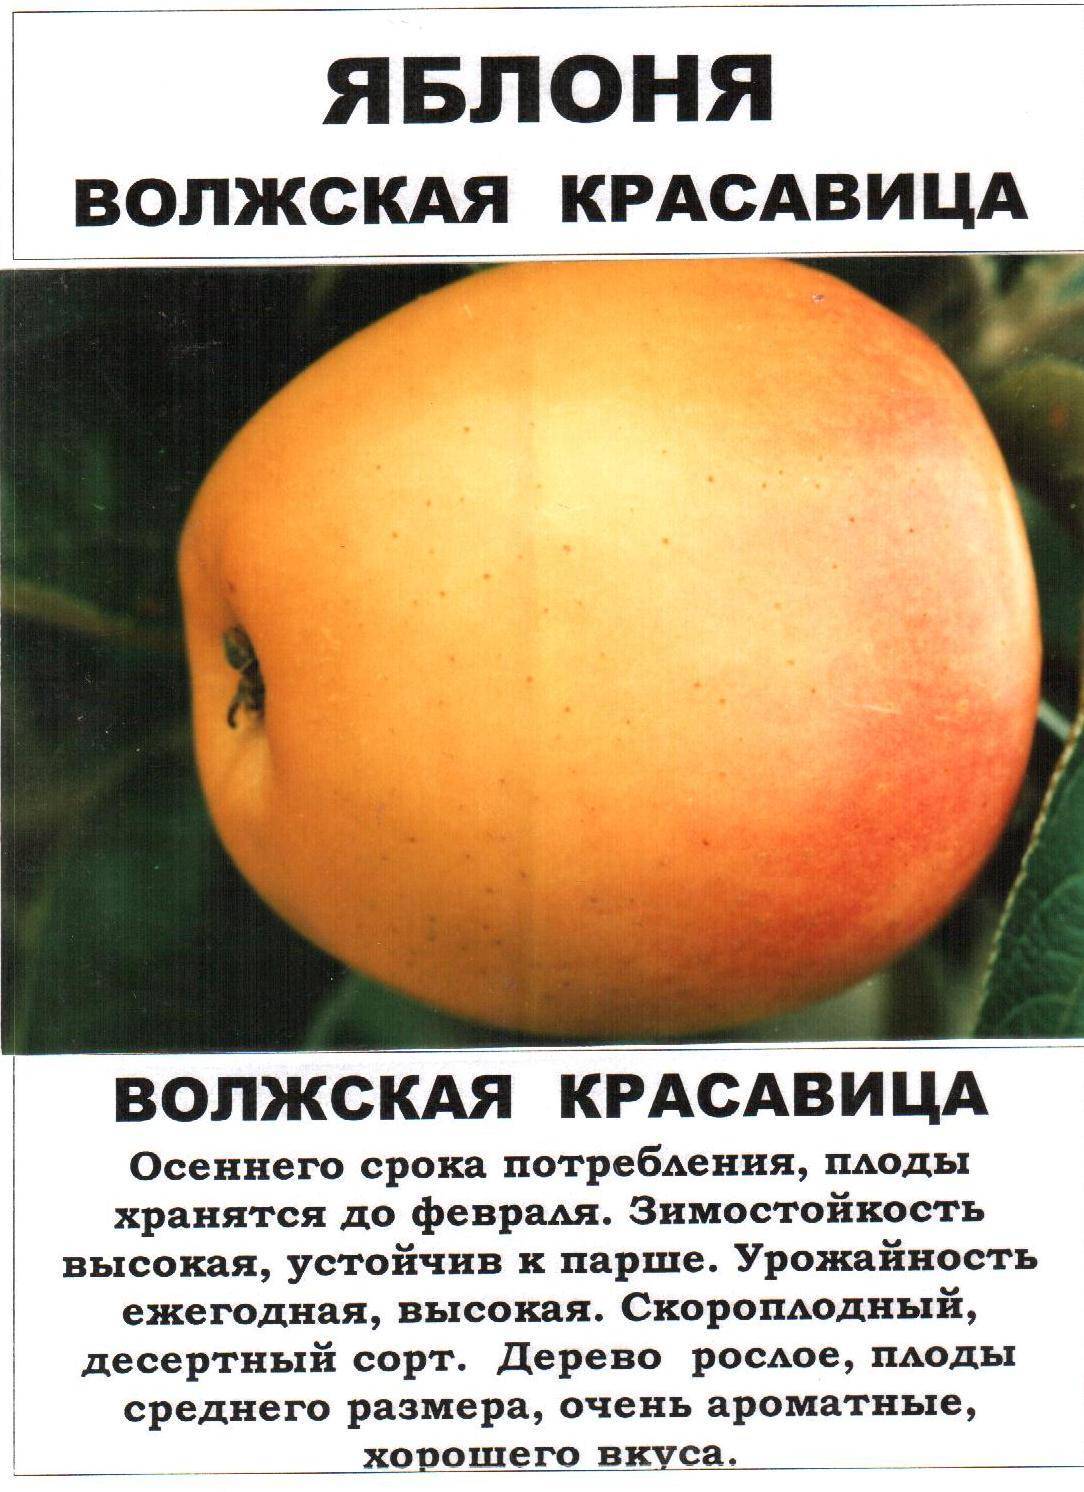 Нетребовательная и плодовитая яблоня башкирская красавица: характеристики, фото, особенности ухода